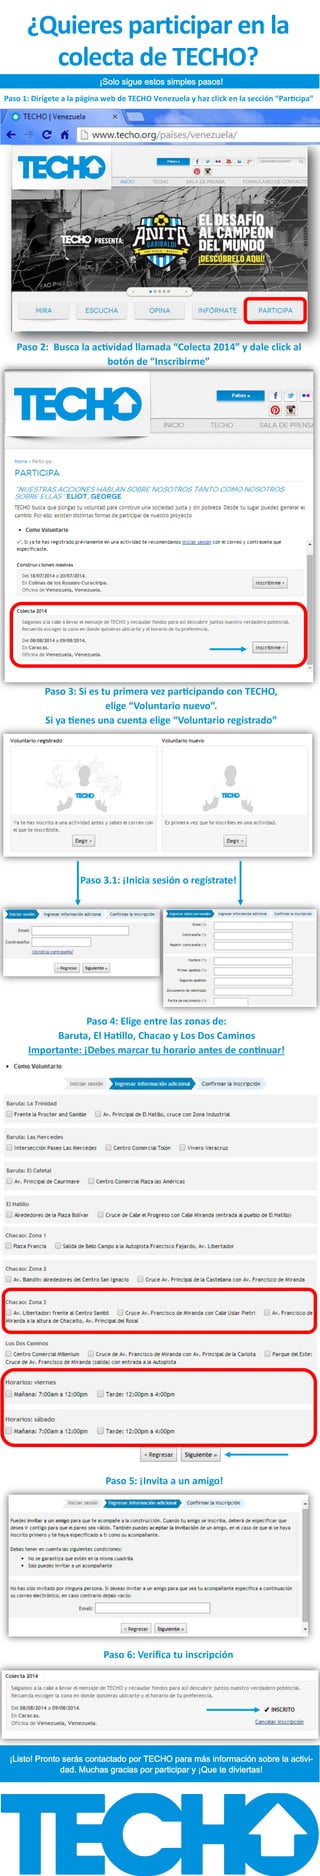 ¿Quieres participar en la
colecta de TECHO?
¡Solo sigue estos simples pasos!
Paso 1: Dirígete a la página web de TECHO Venezuela y haz click en la sección “Participa”
Paso 2: Busca la actividad llamada “Colecta 2014” y dale click al
botón de “Inscribirme”
Paso 3: Si es tu primera vez participando con TECHO,
elige “Voluntario nuevo”.
Si ya tienes una cuenta elige “Voluntario registrado”
Paso 3.1: ¡Inicia sesión o regístrate!
Paso 4: Elige entre las zonas de:
Baruta, El Hatillo, Chacao y Los Dos Caminos
Importante: ¡Debes marcar tu horario antes de continuar!
Paso 5: ¡Invita a un amigo!
Paso 6: Verifica tu inscripción
¡Listo! Pronto serás contactado por TECHO para más información sobre la activi-
dad. Muchas gracias por participar y ¡Que te diviertas!
 